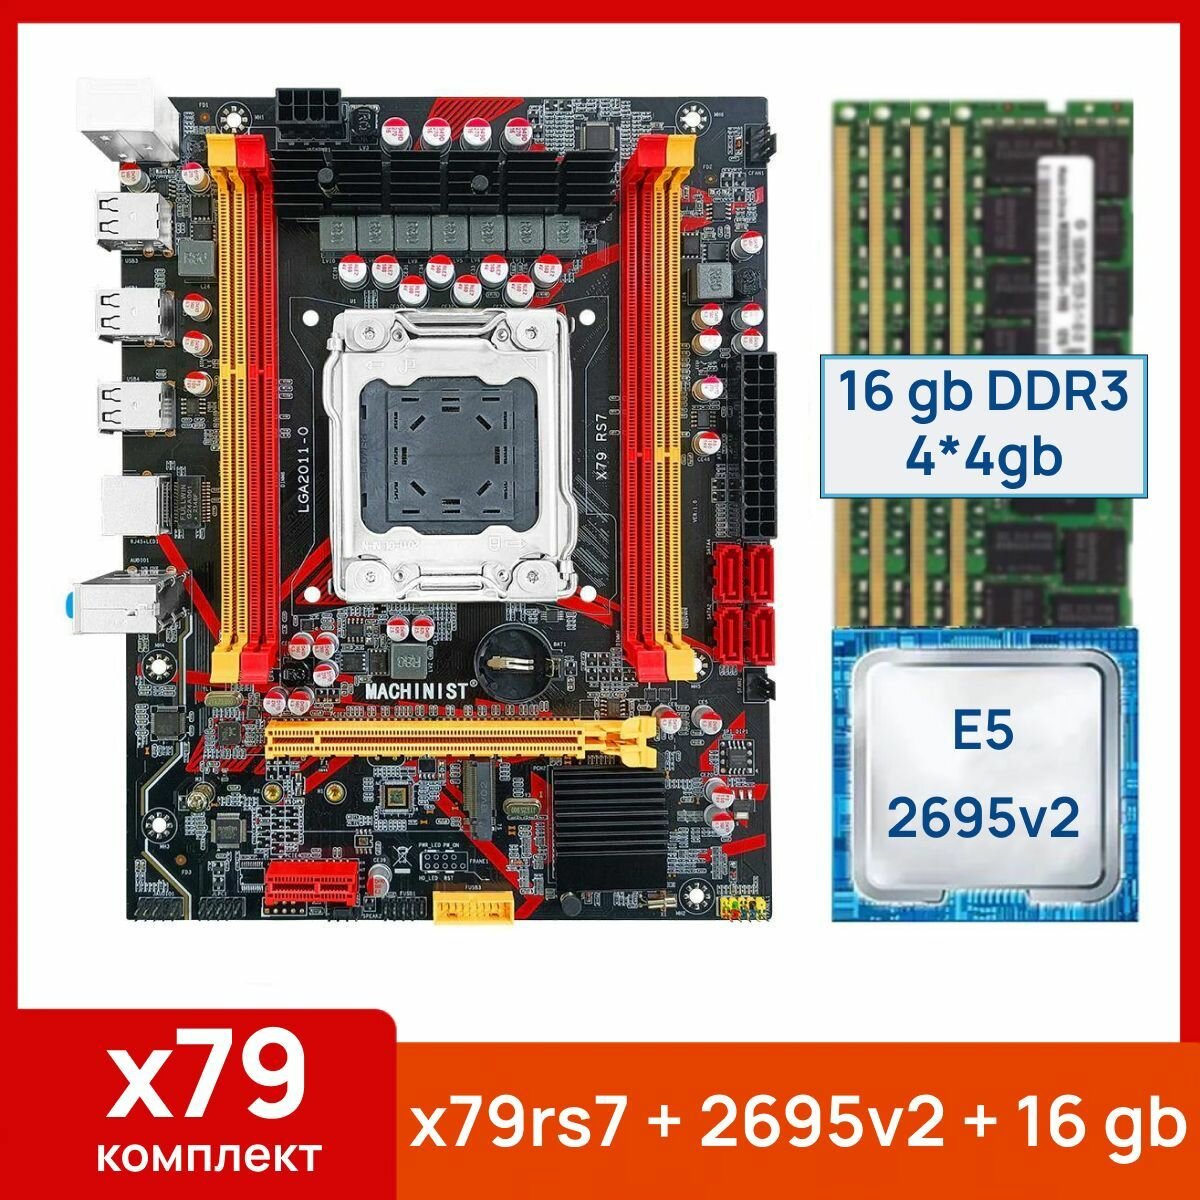 Комплект: Материнская плата Machinist RS-7 + Процессор Xeon E5 2695v2 + 16 gb(4x4gb) DDR3 серверная